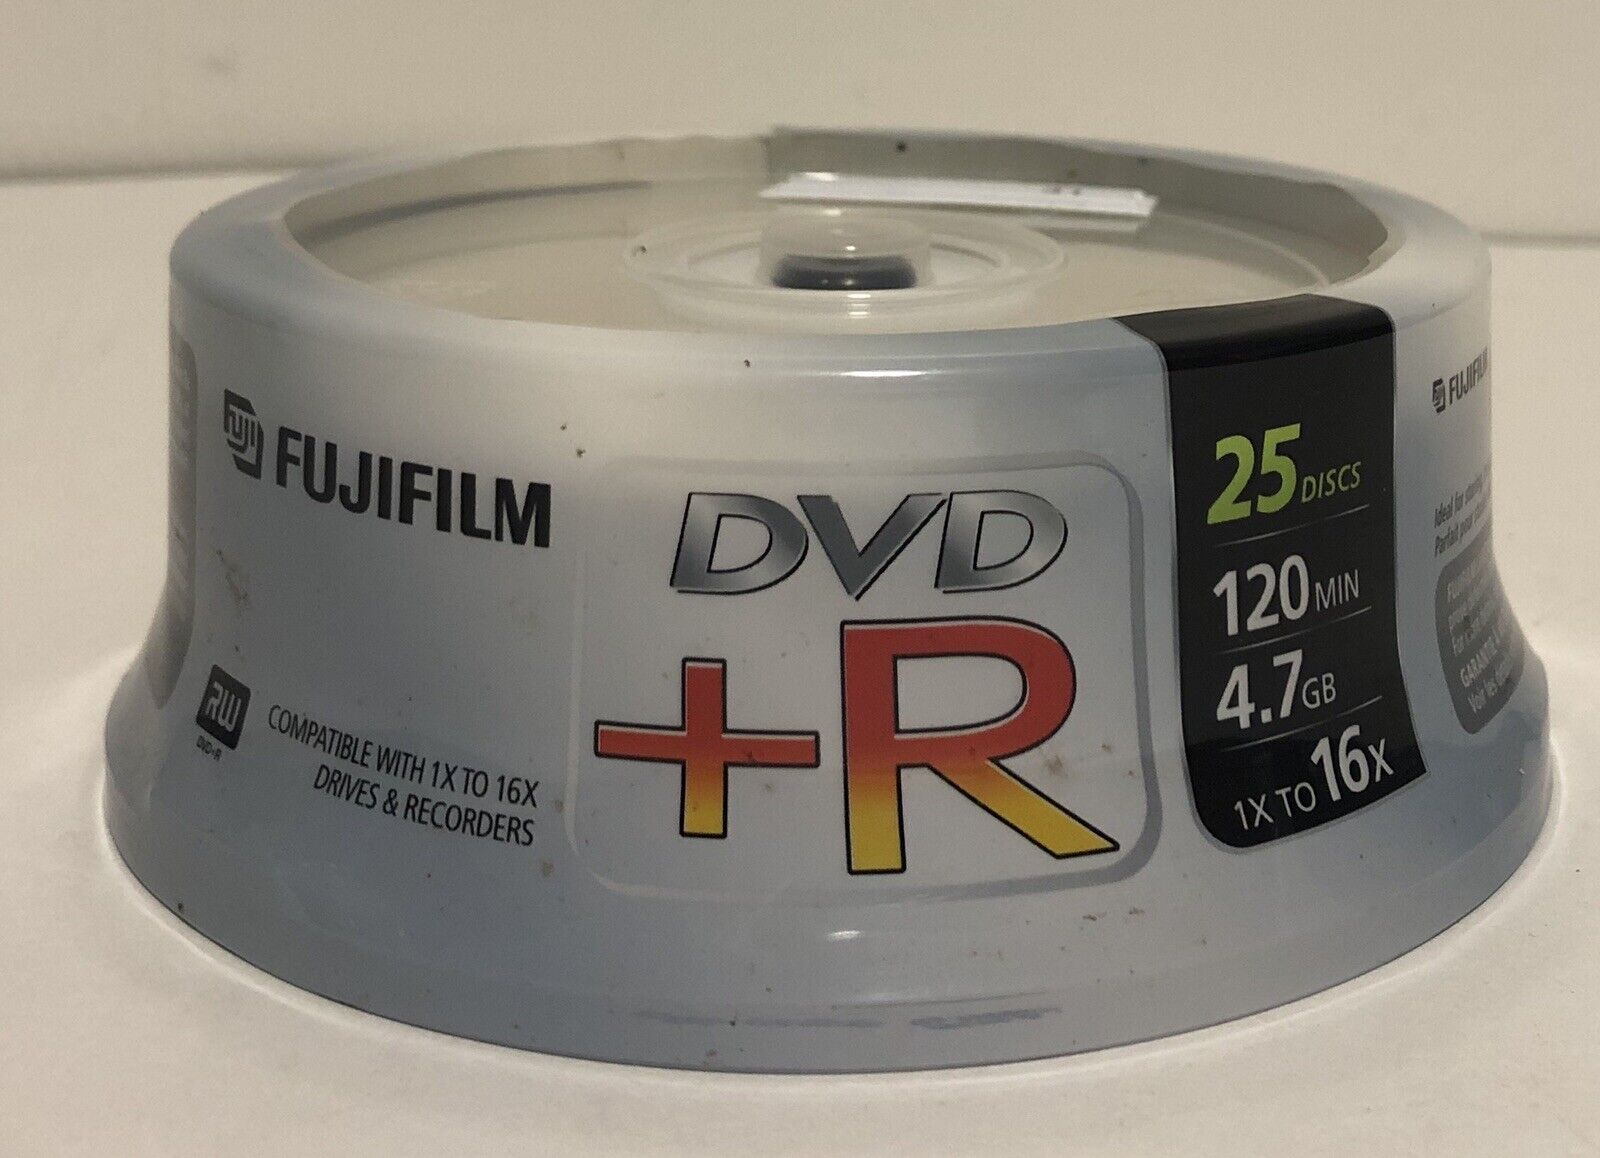 FUJI FILM DVD +R 25 Discs 120 MIN 4.7 GB 1X to 16X NIP